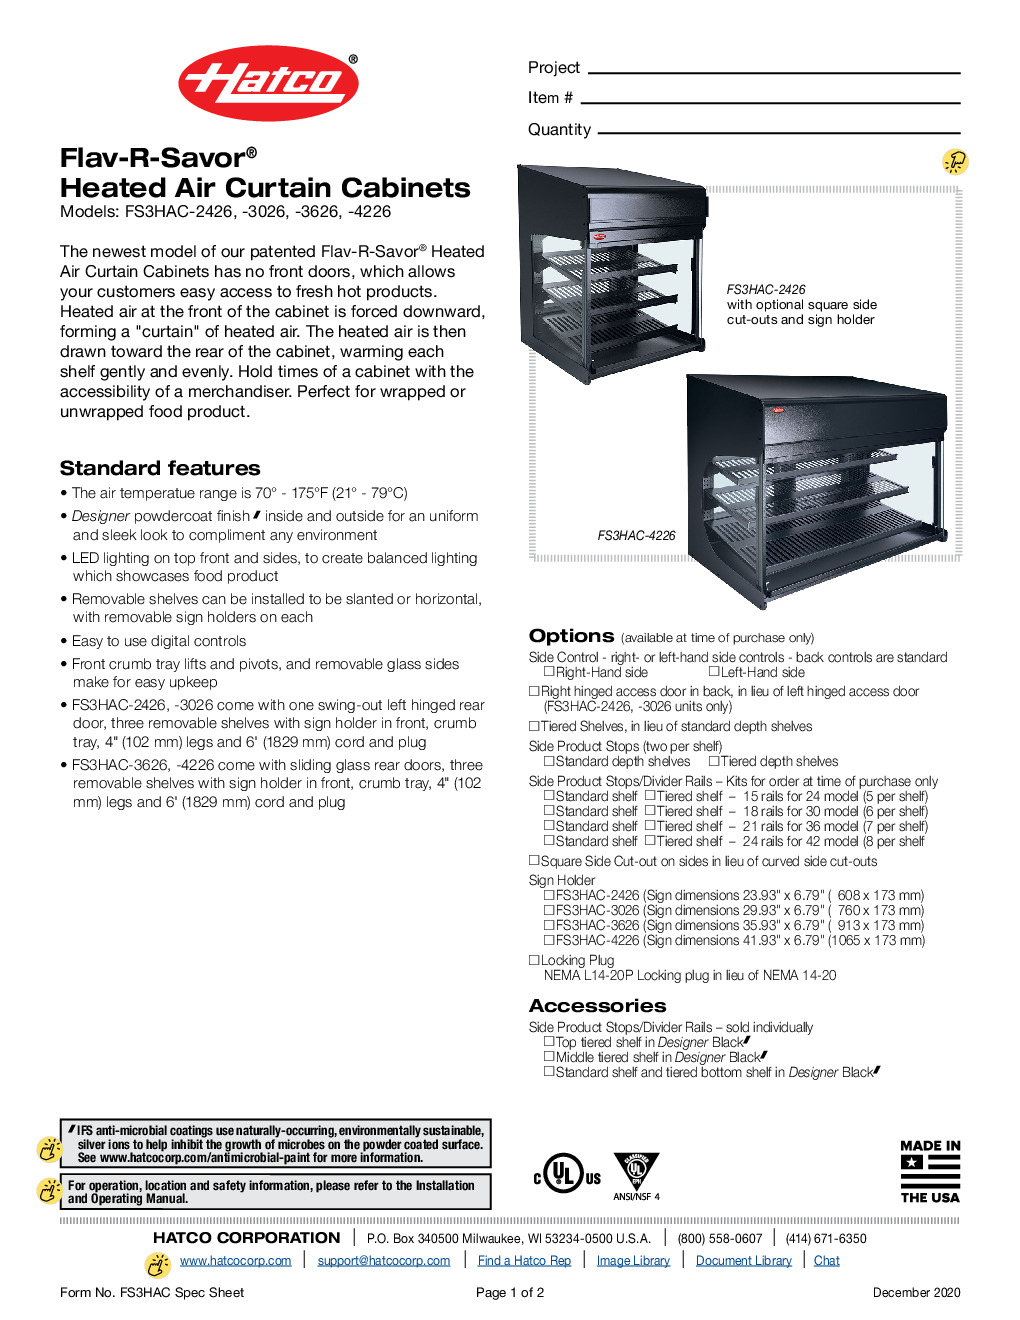 Hatco FS3HAC-4226 Countertop Hot Food Display Case